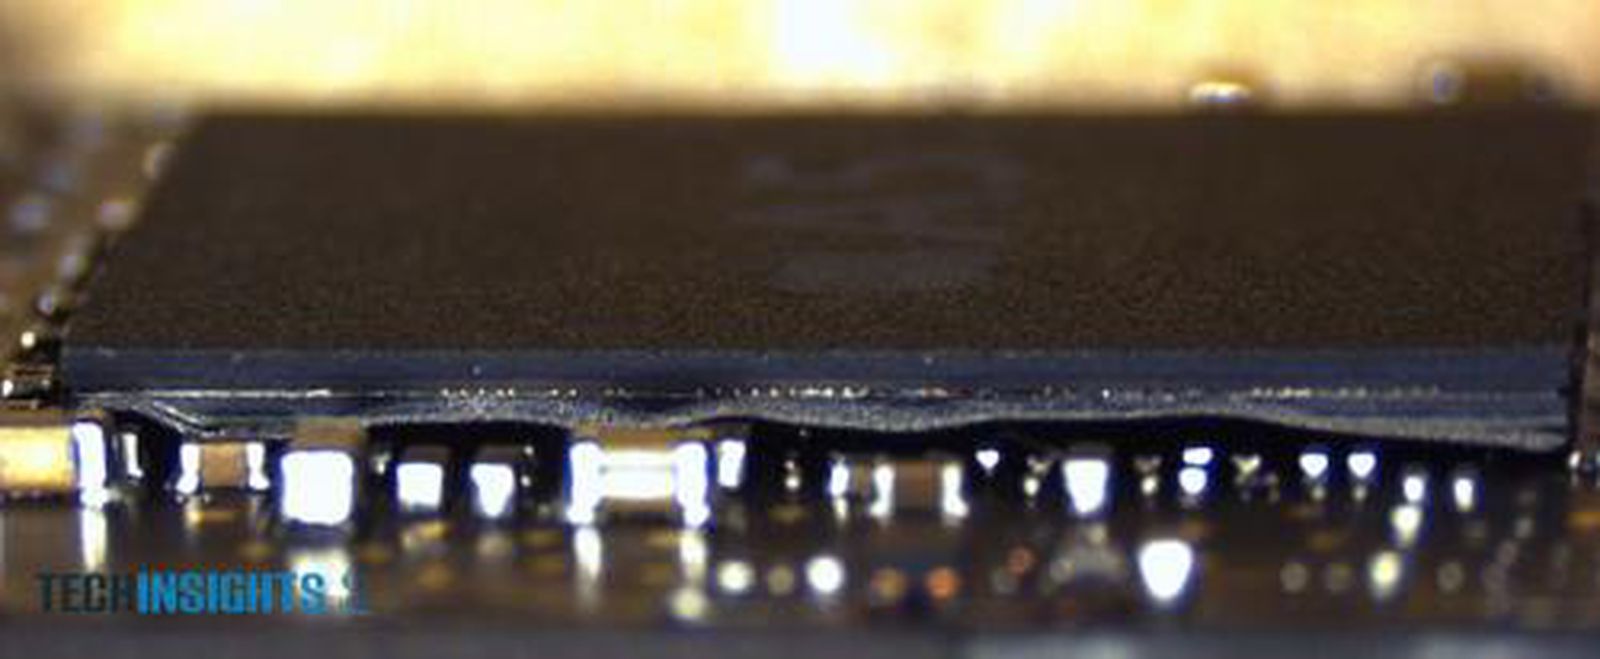 Микрочип в разрезе. Чип в разрезе. БГА чип в разрезе. Процессоры Apple внутри. М5 чип